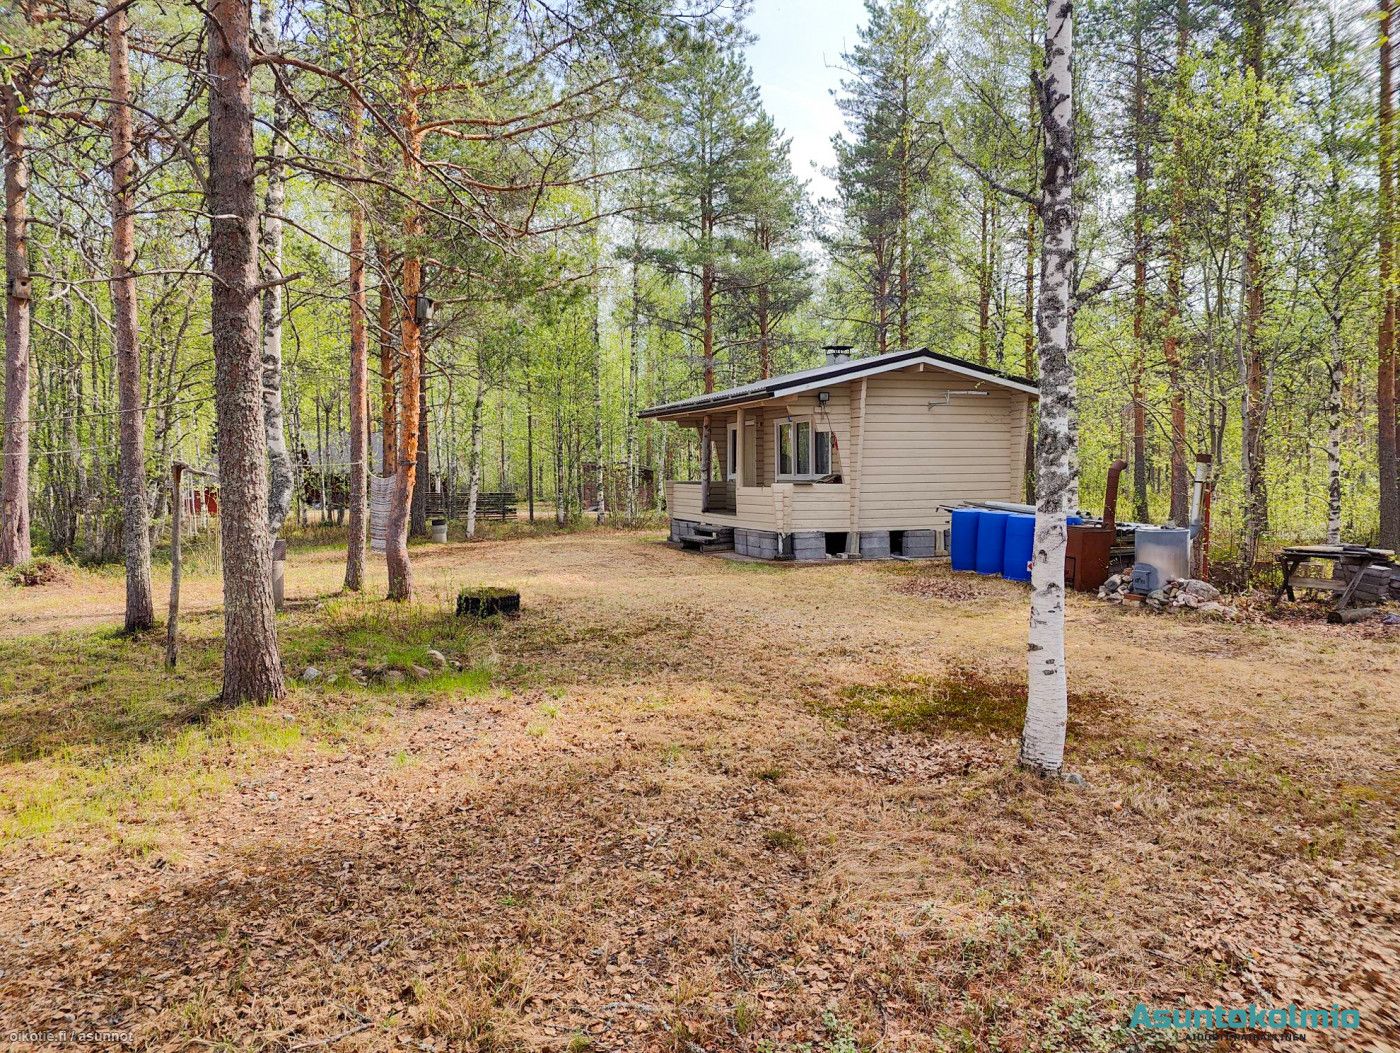 20 m² Linjatie 97, 93140 Pudasjärvi Tupa,k,et,saunarakennus,  piharakennus,lato,puucee – Oikotie 17160337 – SKVL